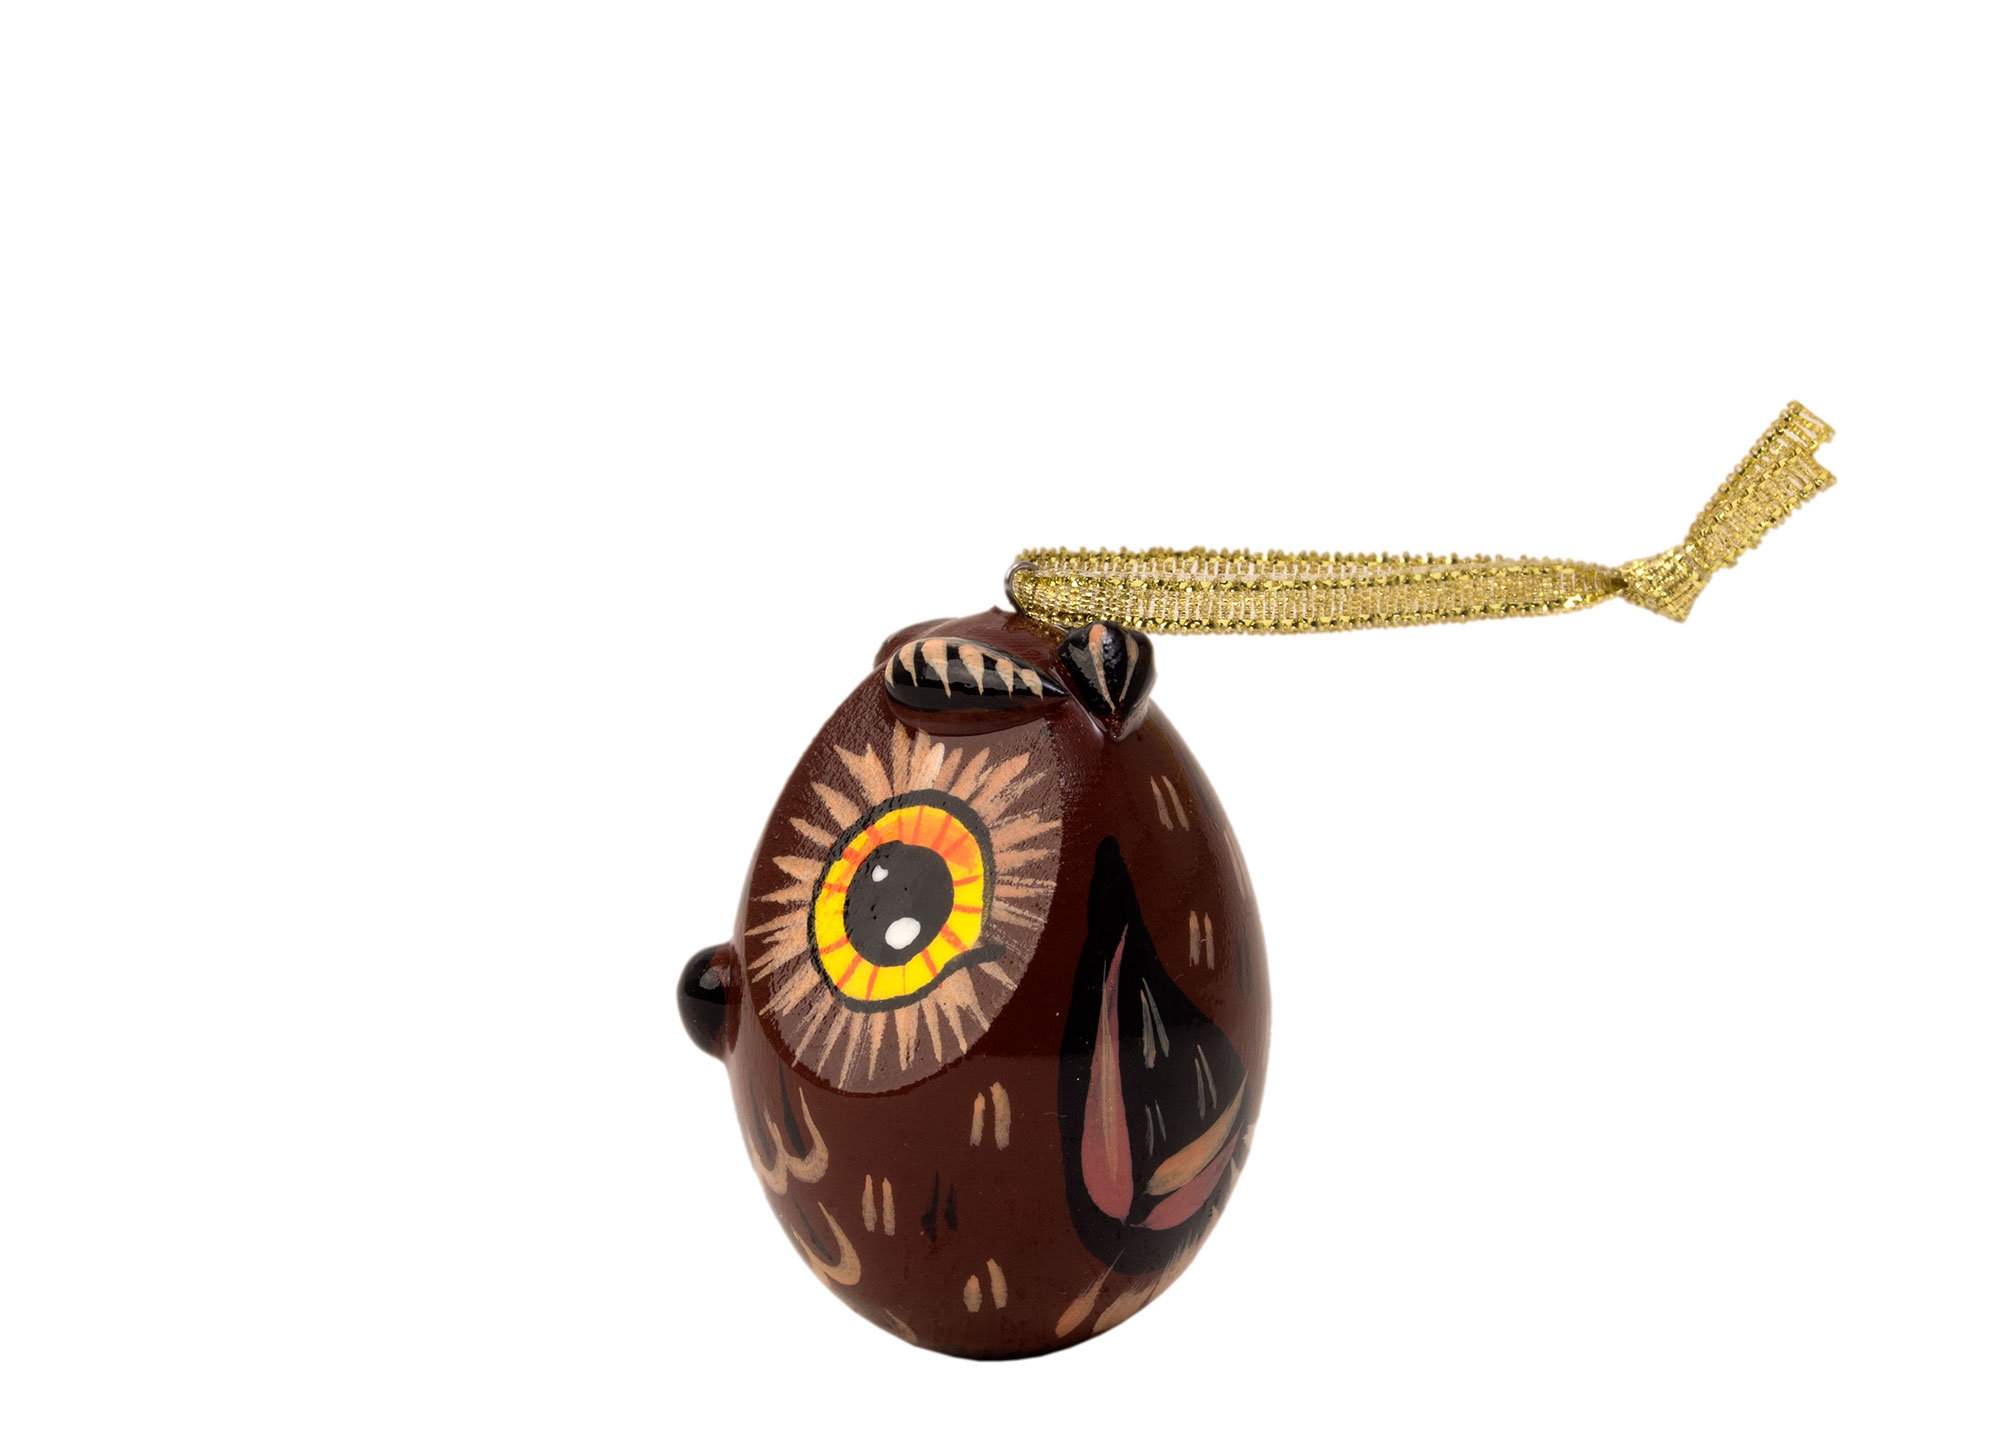 Buy Owl Ornament, 2" at GoldenCockerel.com